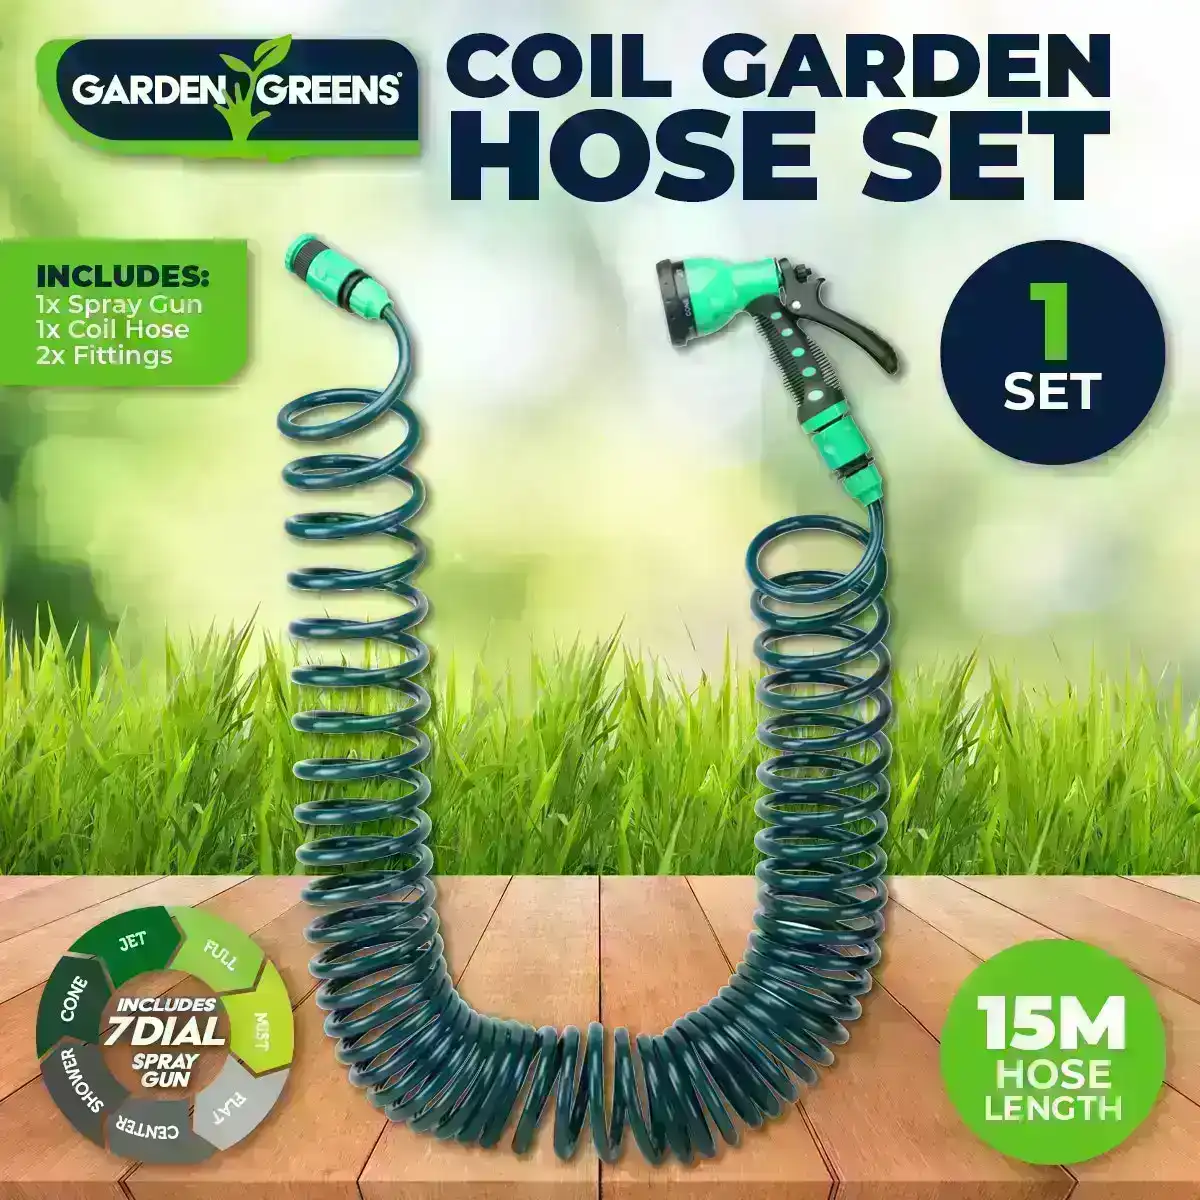 Garden Greens® Garden Hose Set Coil Design 7 Dial Spray Gun & Fittings 15m